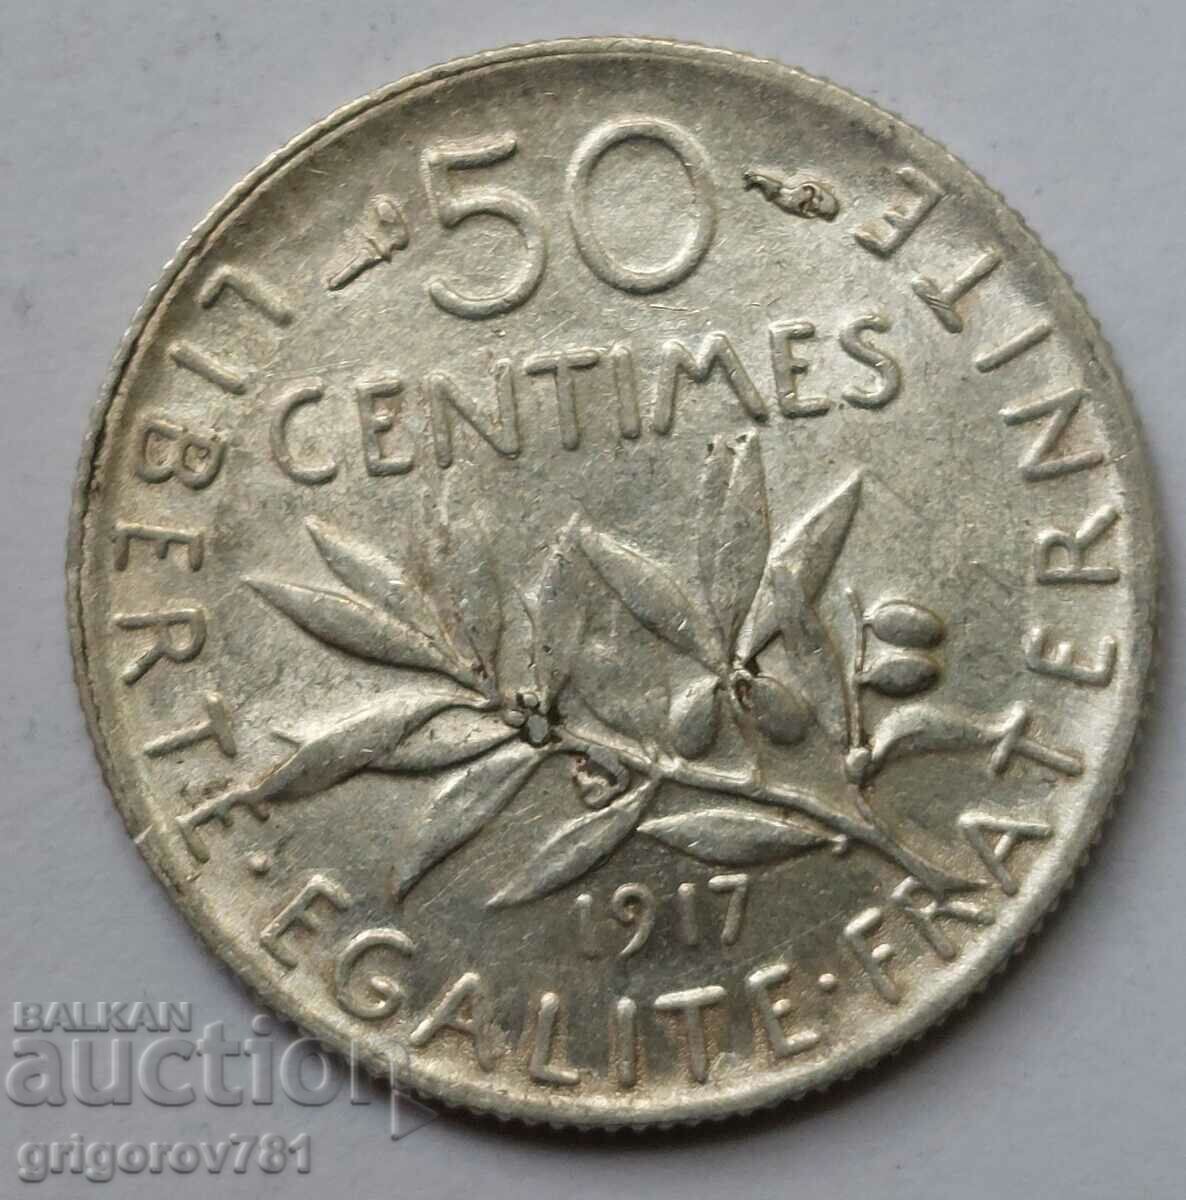 50 centimes argint Franta 1917 - moneda de argint #25